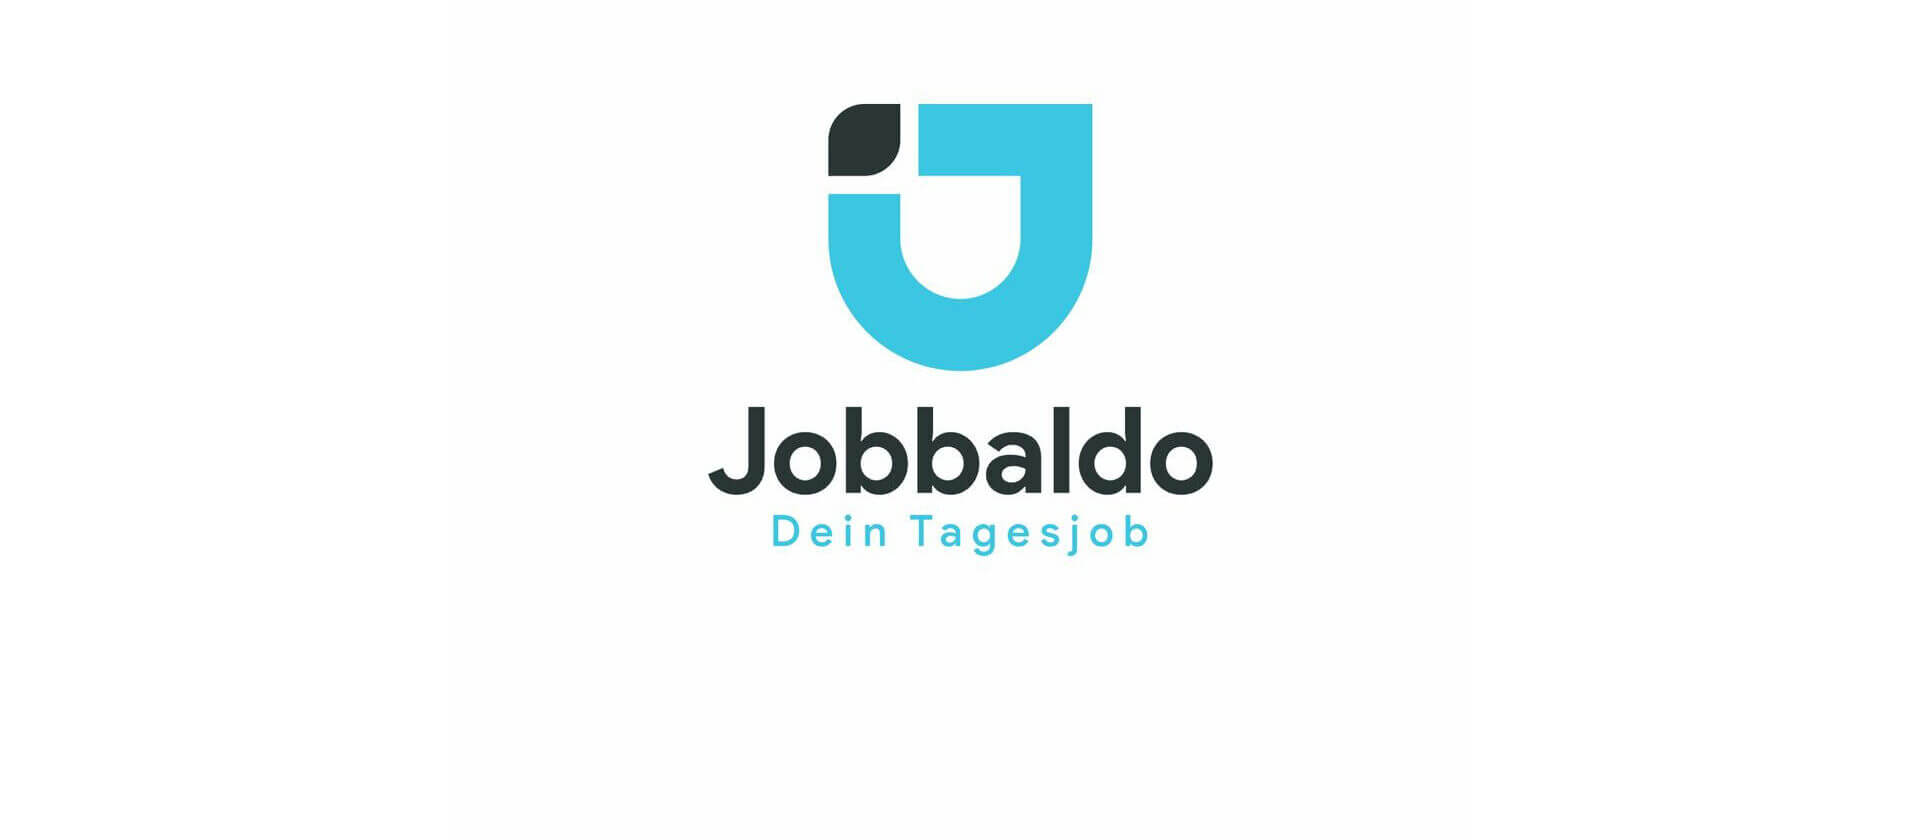 Jobbaldo